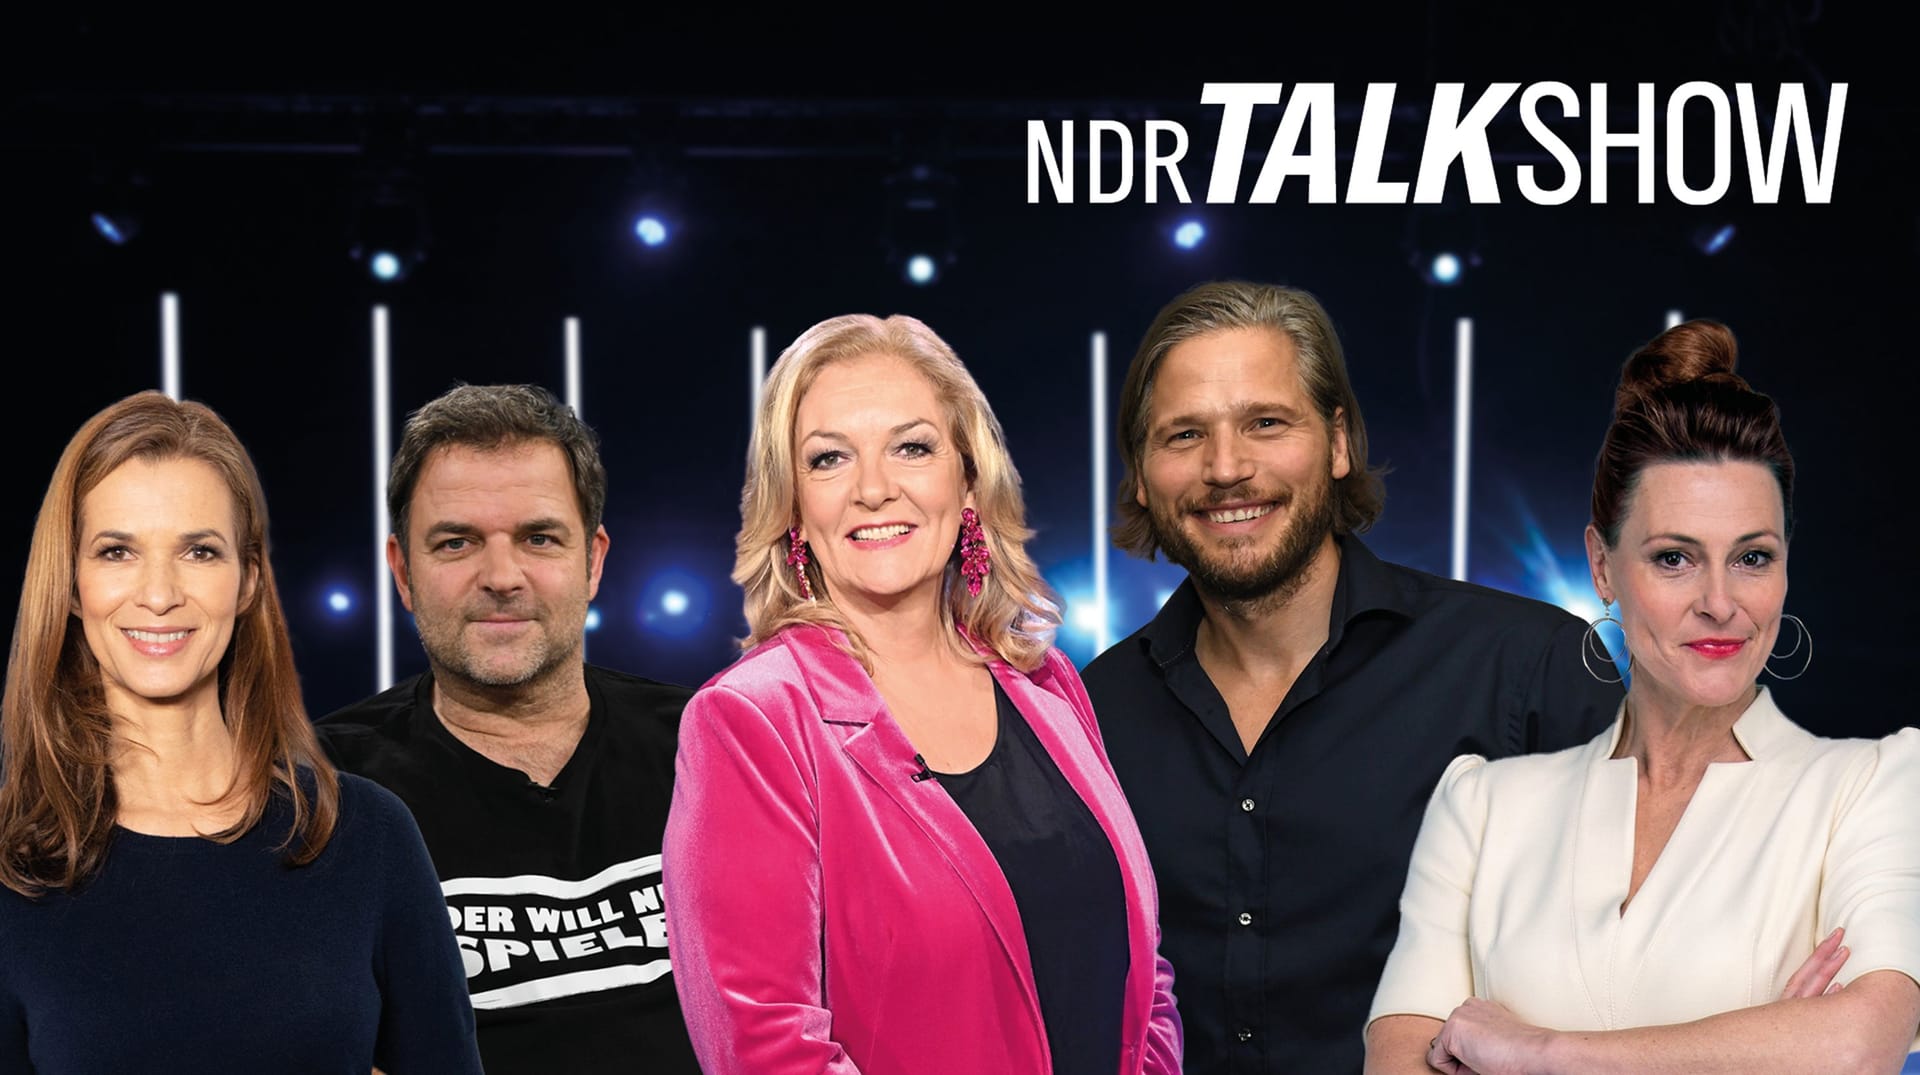 Bettina Tietjen (M.) moderiert in diesem Jahr die "NDR Talk Show" unter anderen mit der Journalistin Anja Reschke, Hundetrainer Martin Rütter, Schauspieler Sebastian Ströbel und "Tagesschau"-Sprecherin Julia-Niharika Sen (v.l.n.r.).